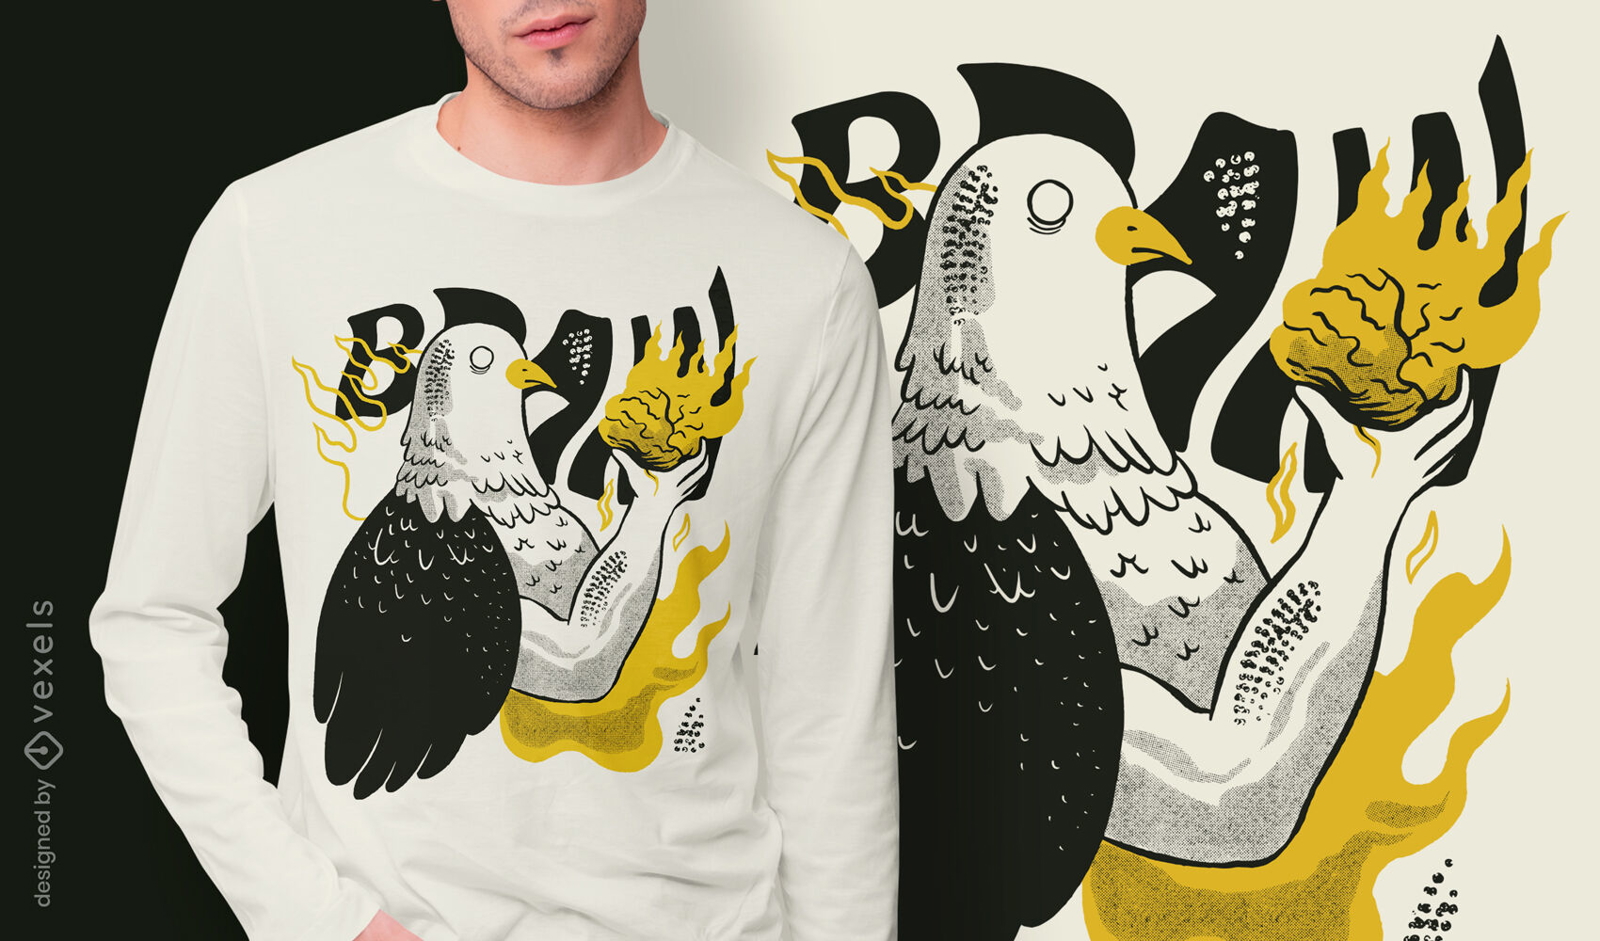 Bizarres Taubenvogelkörper-T-Shirt Design